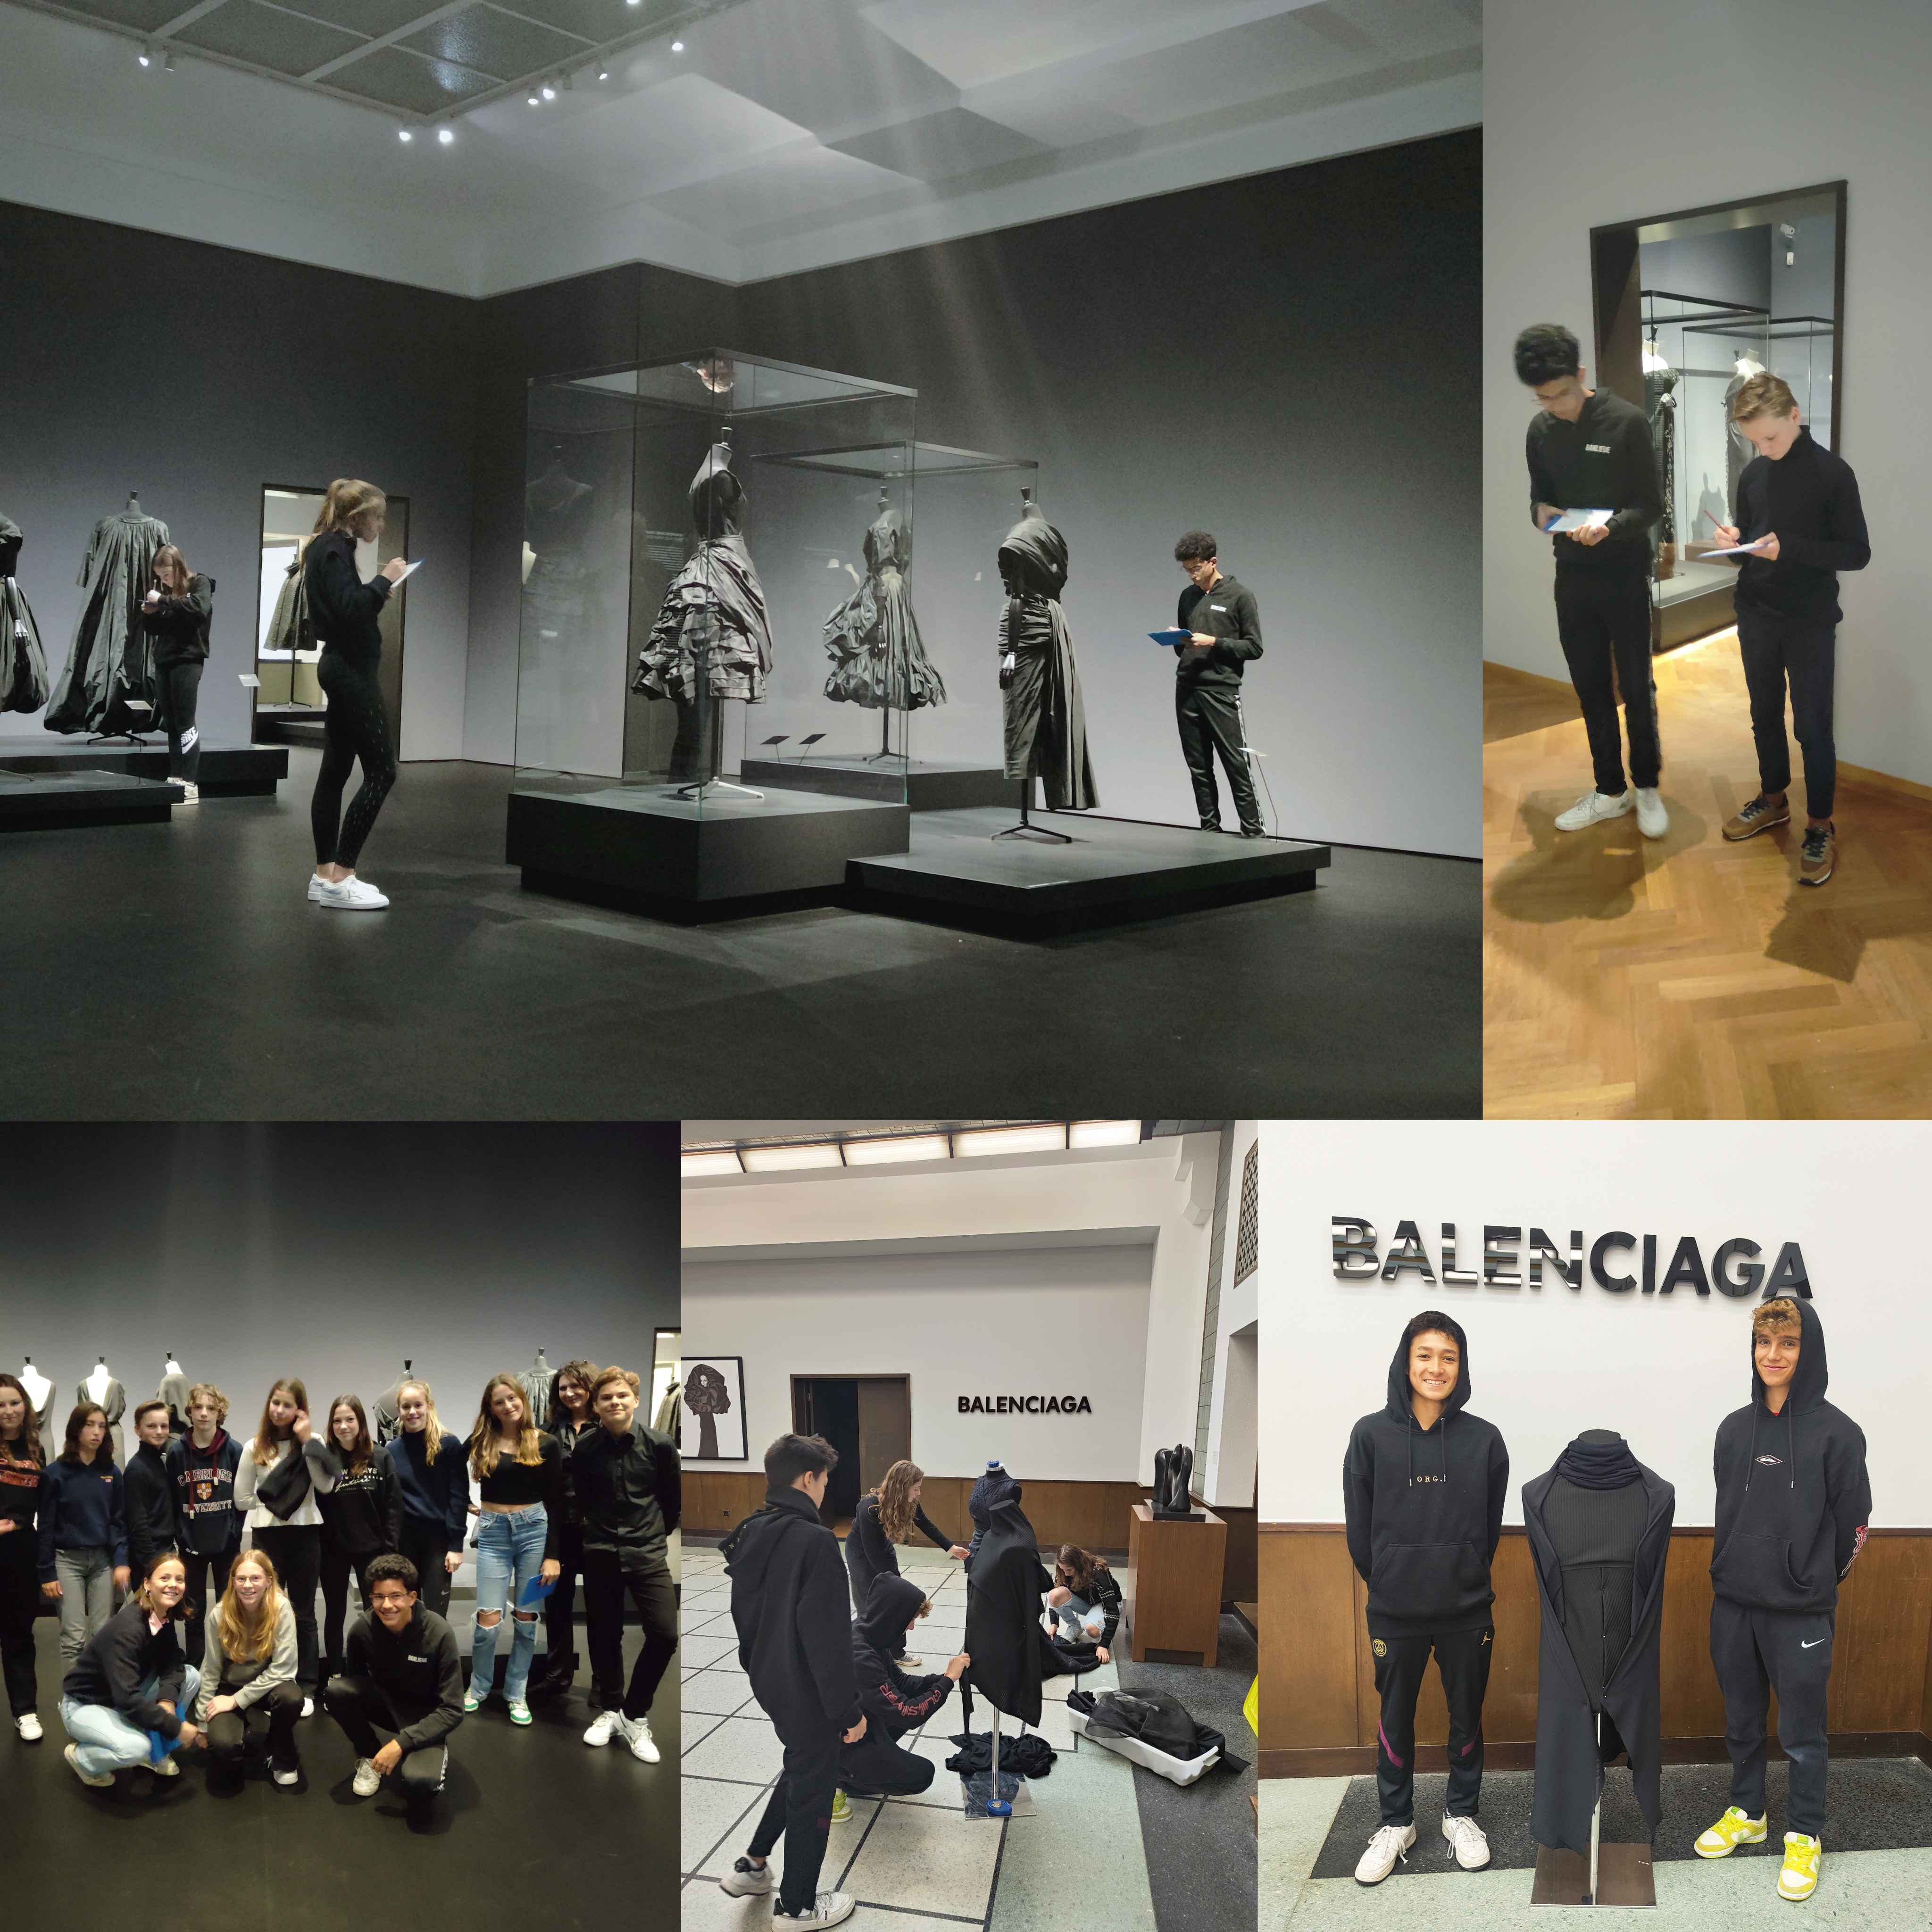 Kunstmuseum Balenciaga en introductie moderne kunst